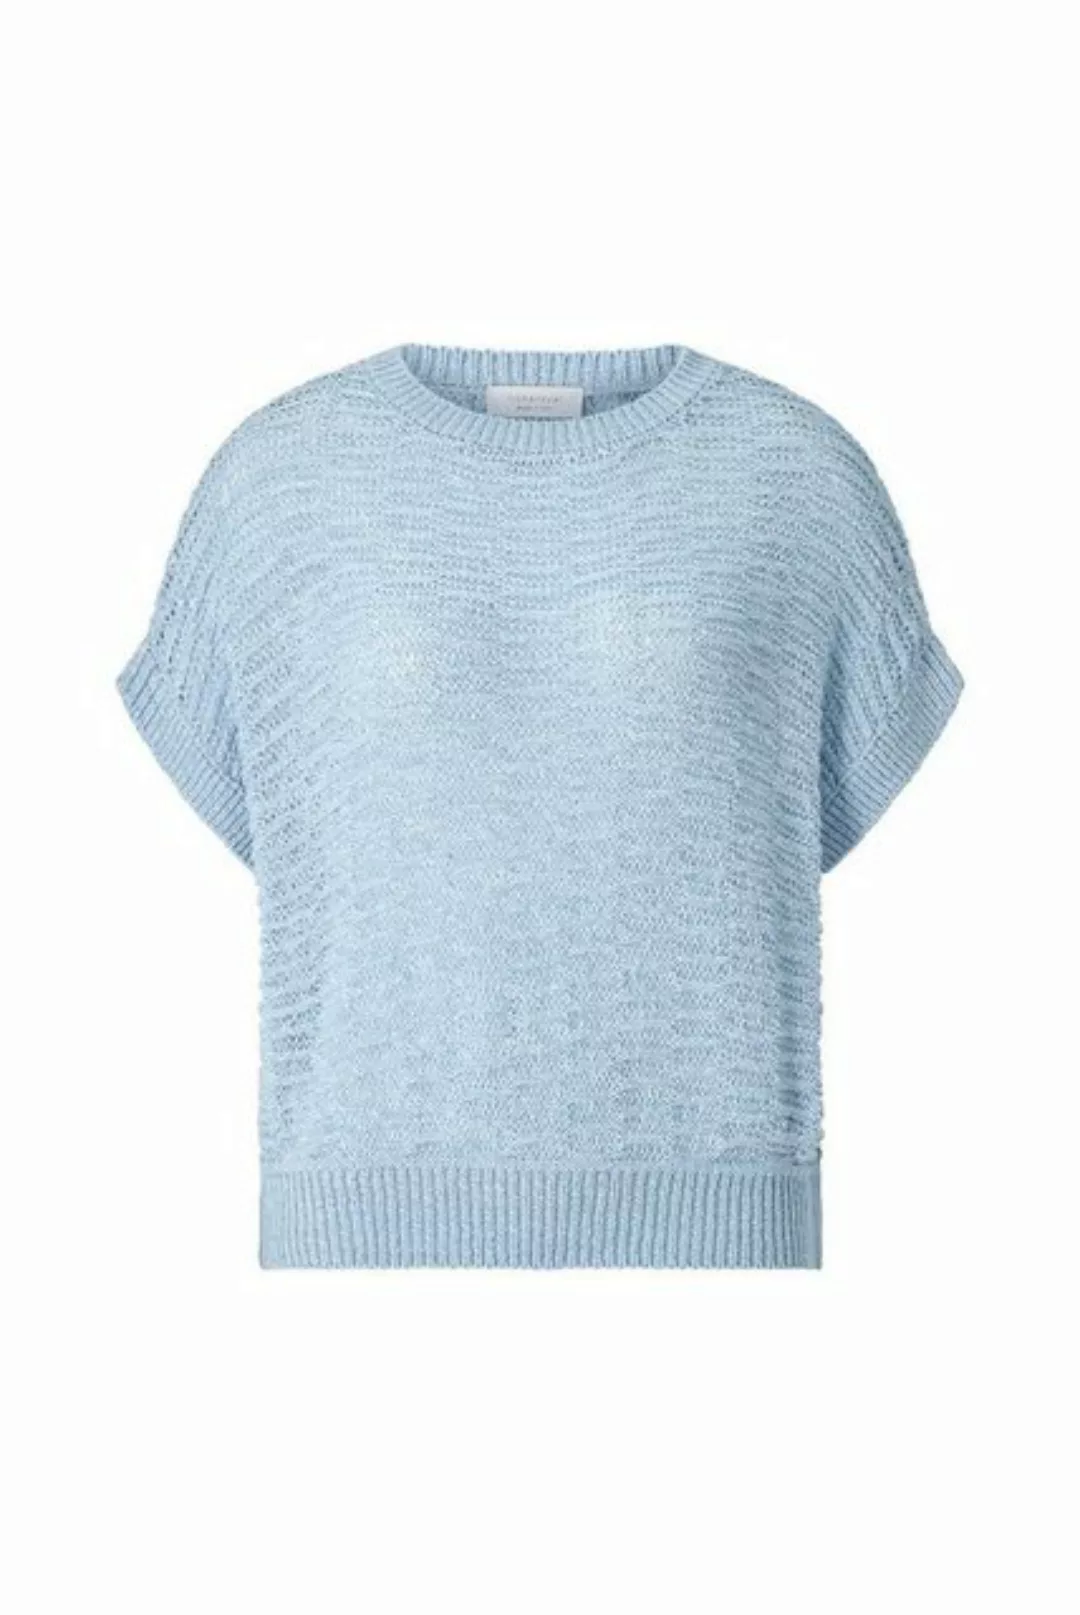 Rich & Royal Sweatshirt sleeveless tape yarn crew-neck, cotton blue günstig online kaufen